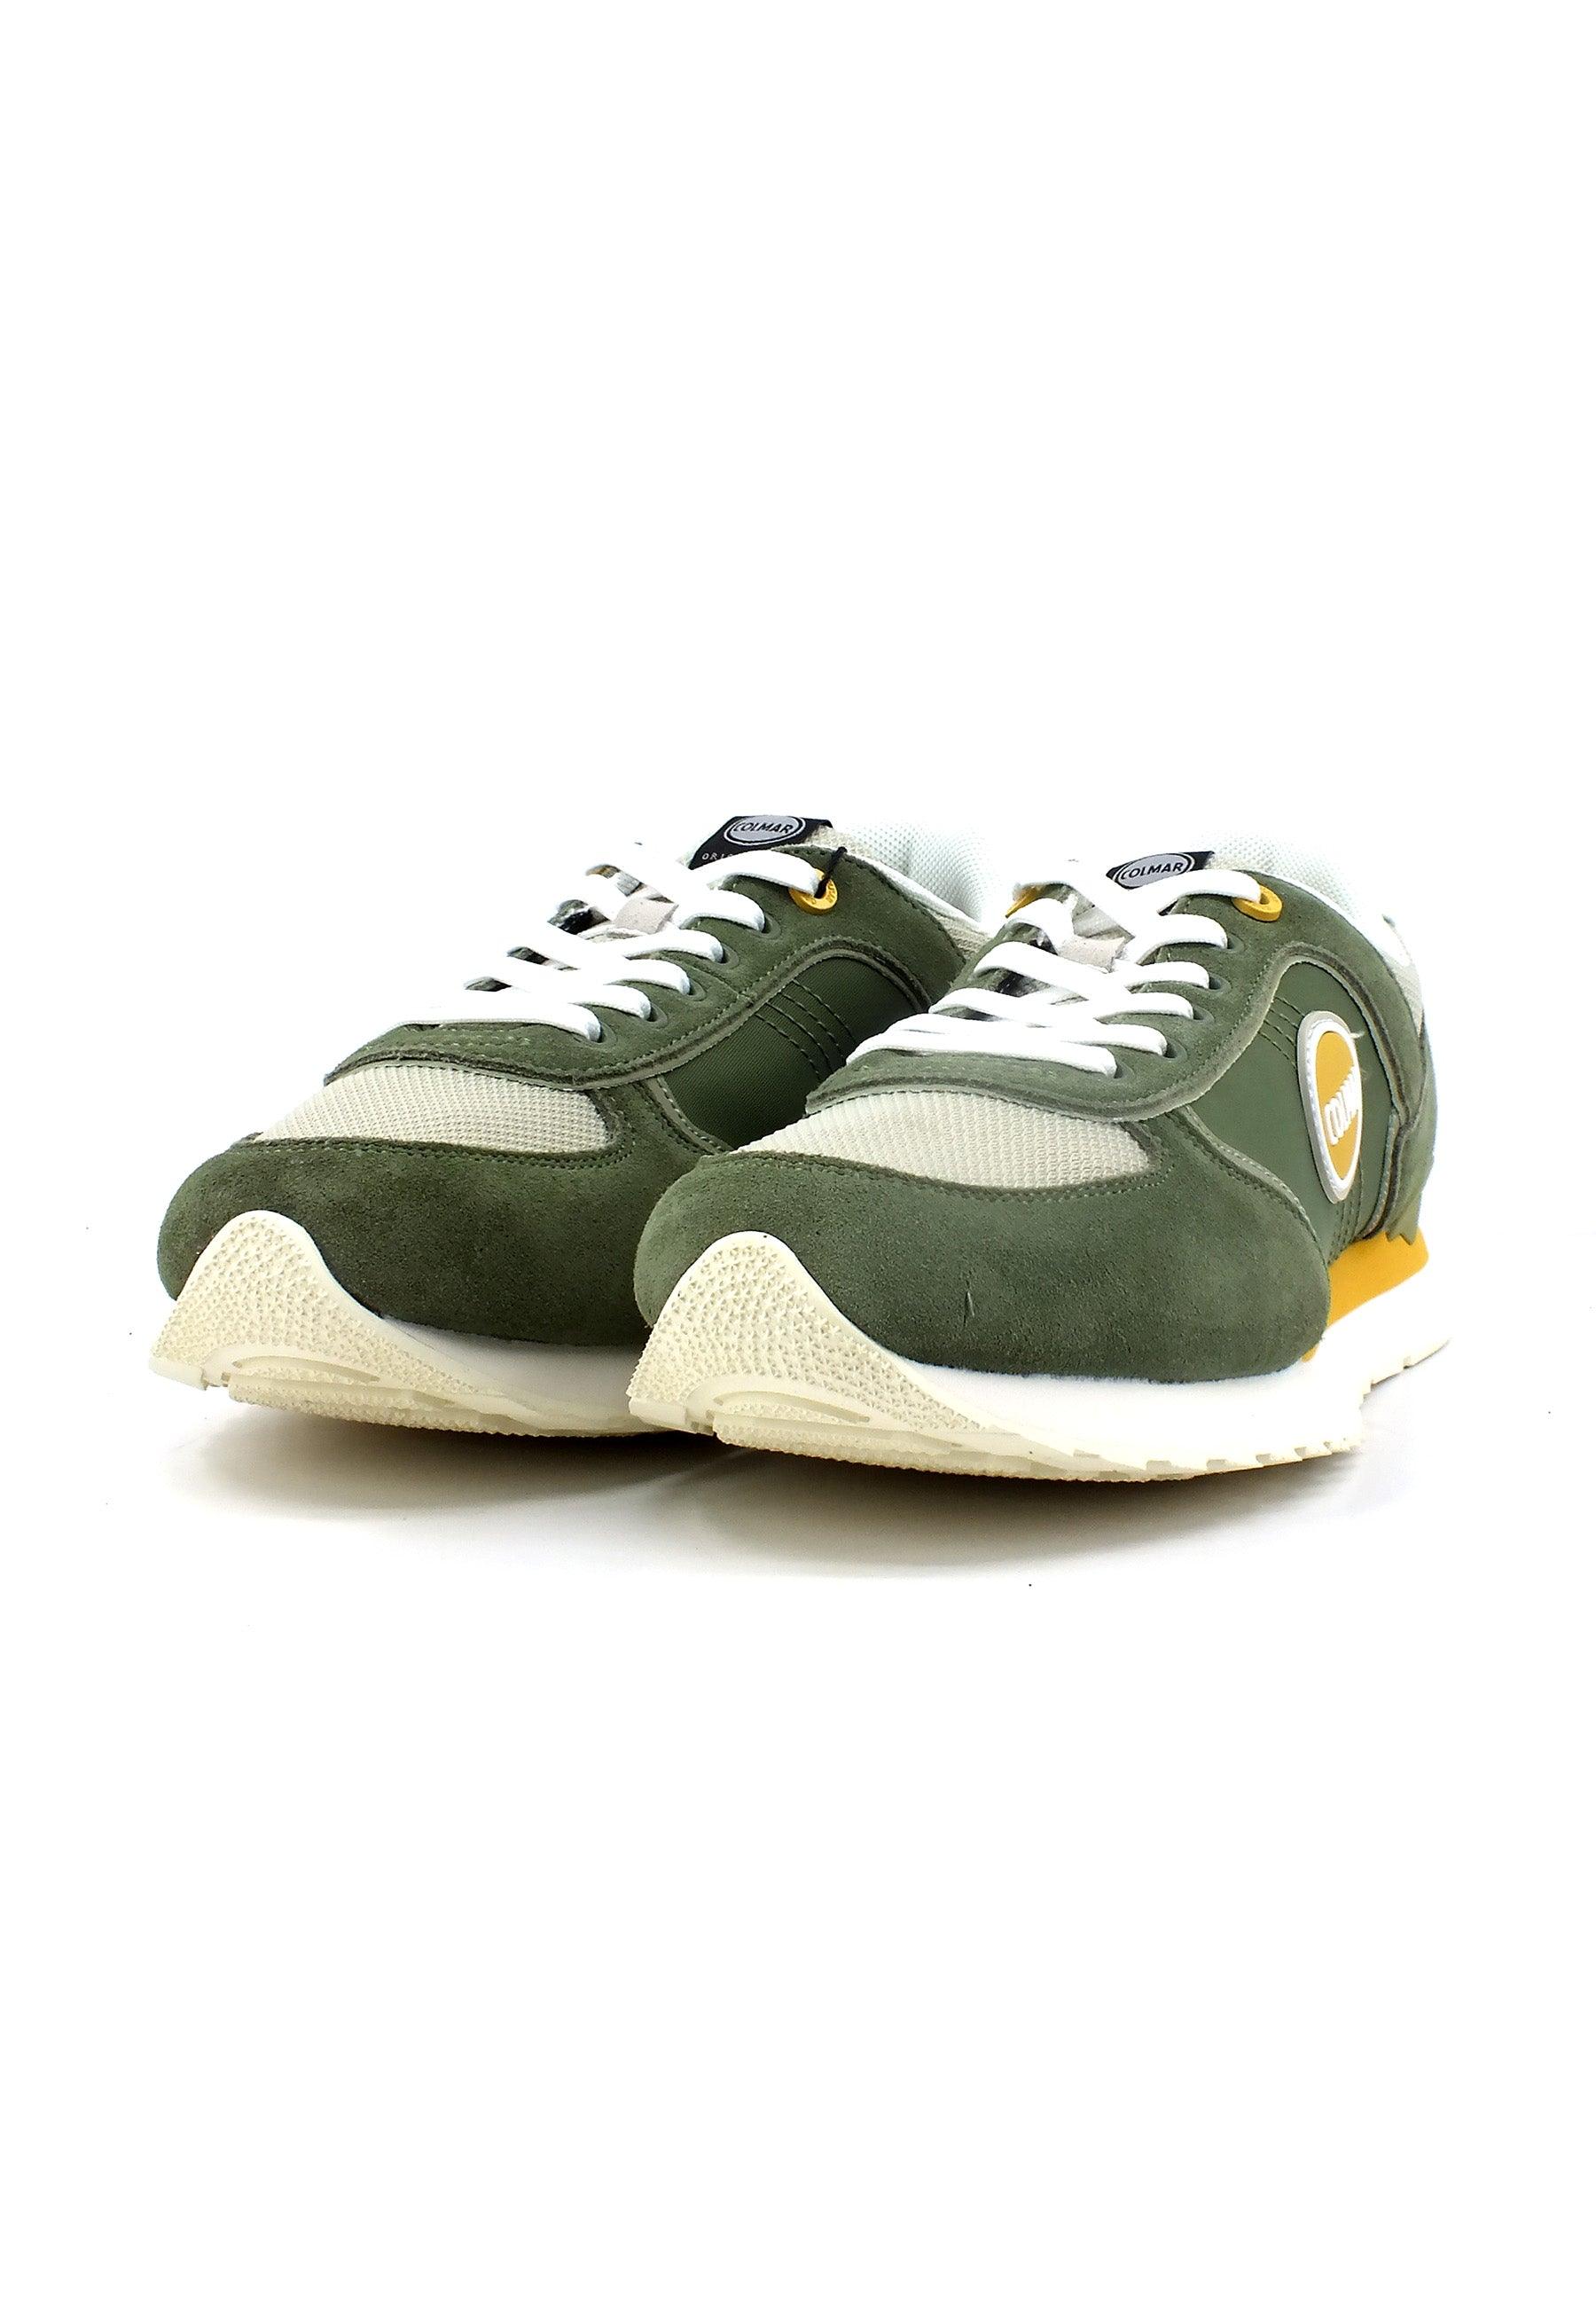 COLMAR Sneaker Uomo Military Green TRAVIS BLOCK-009 - Sandrini Calzature e Abbigliamento